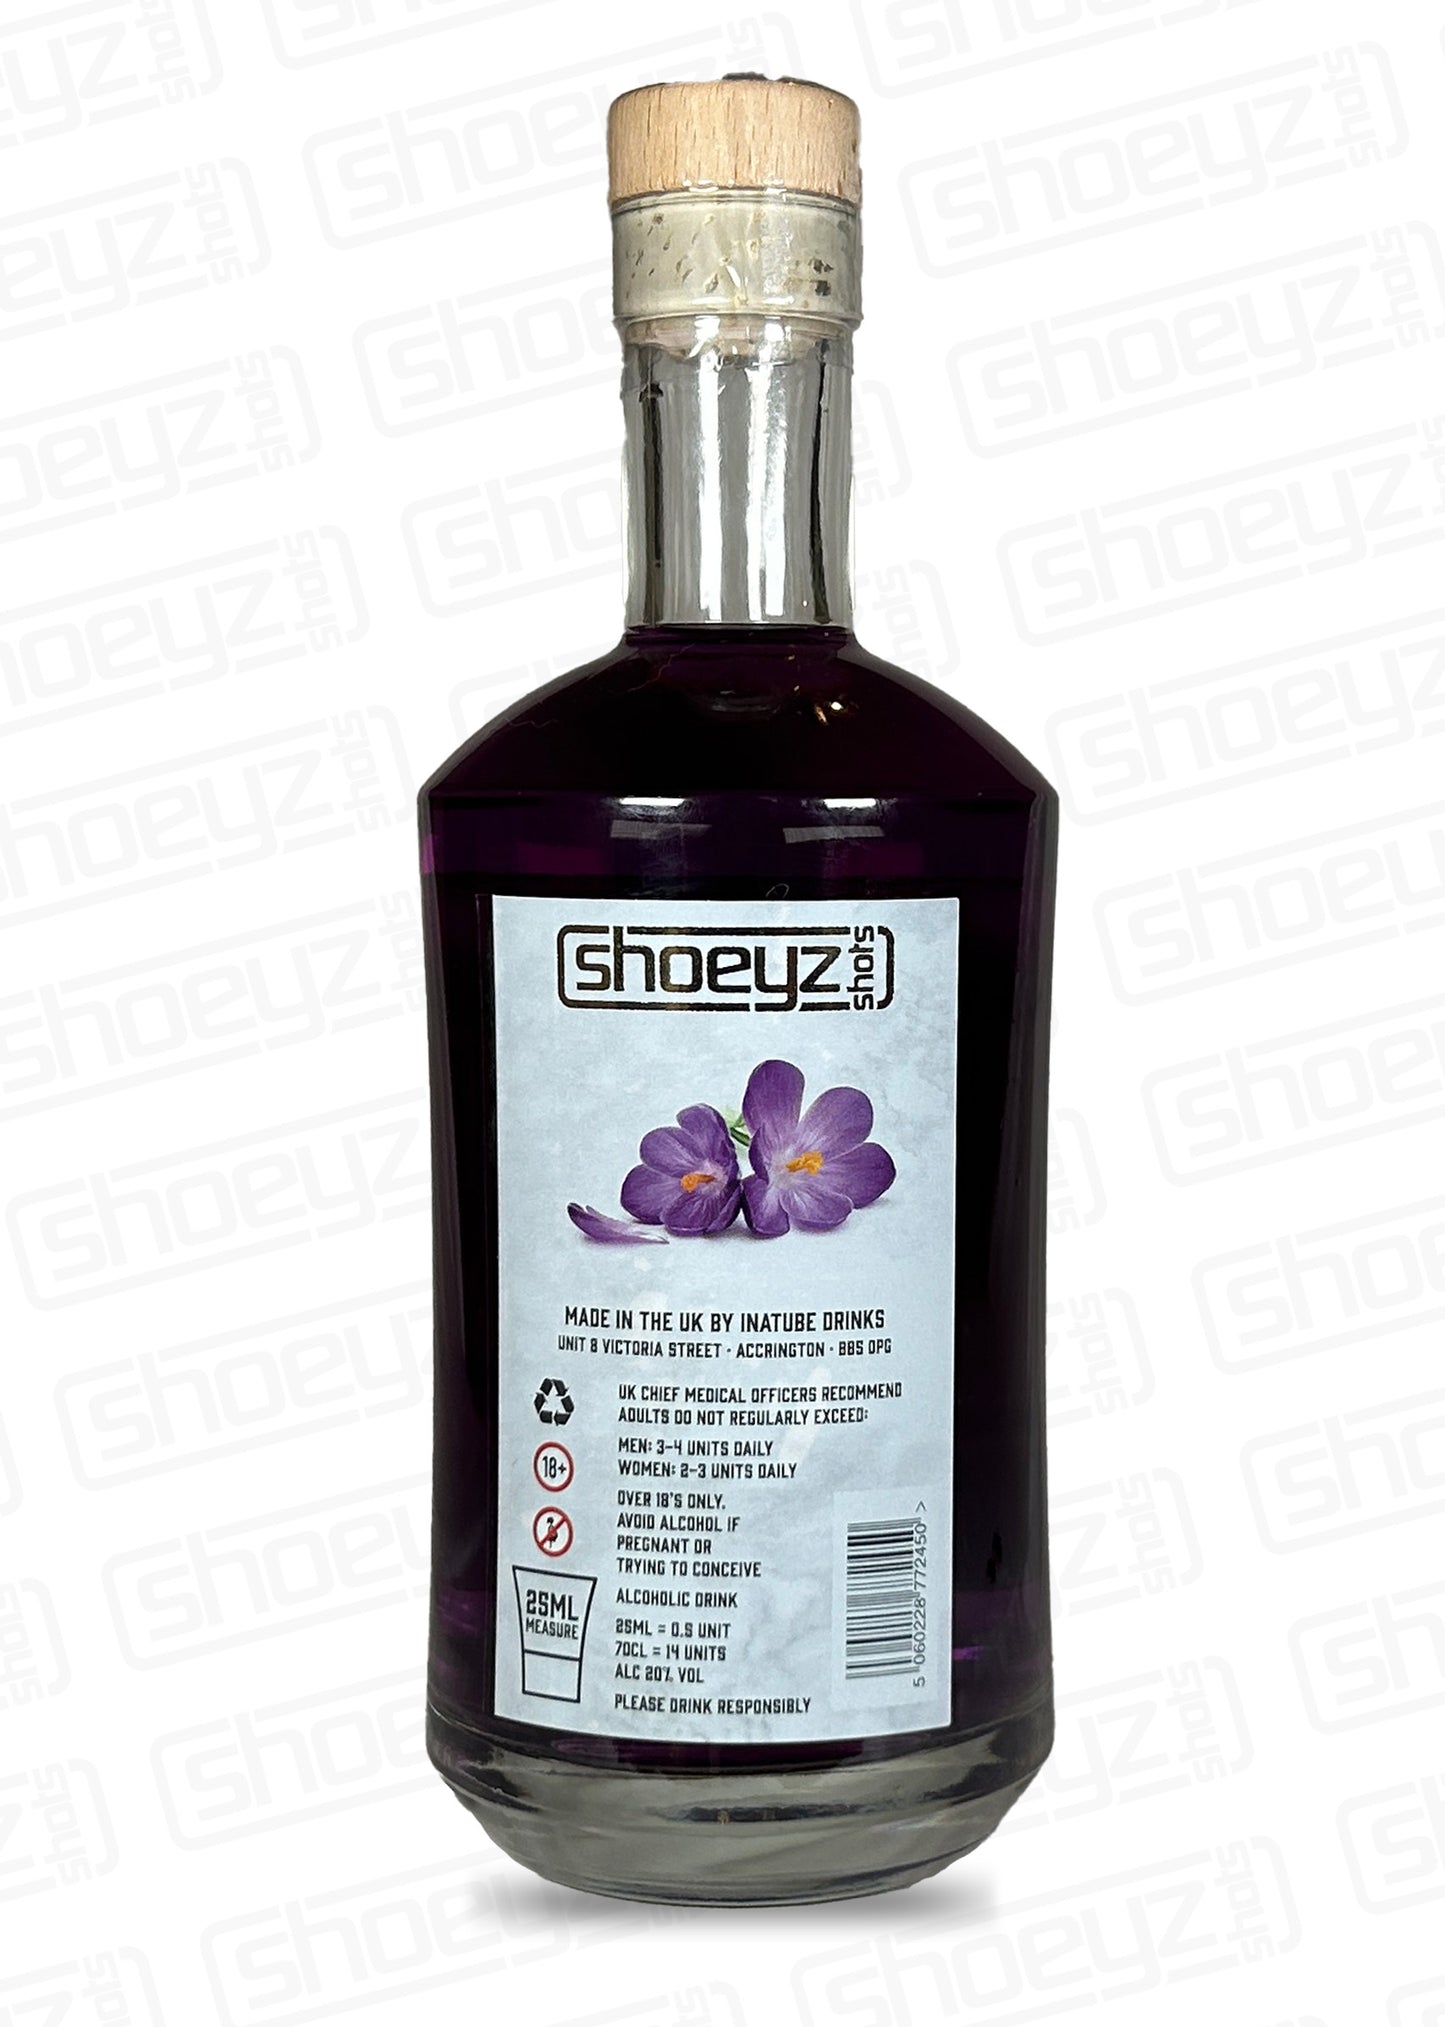 Gin Based Parma Violet Flavour 70cl Bottle (6 pack)